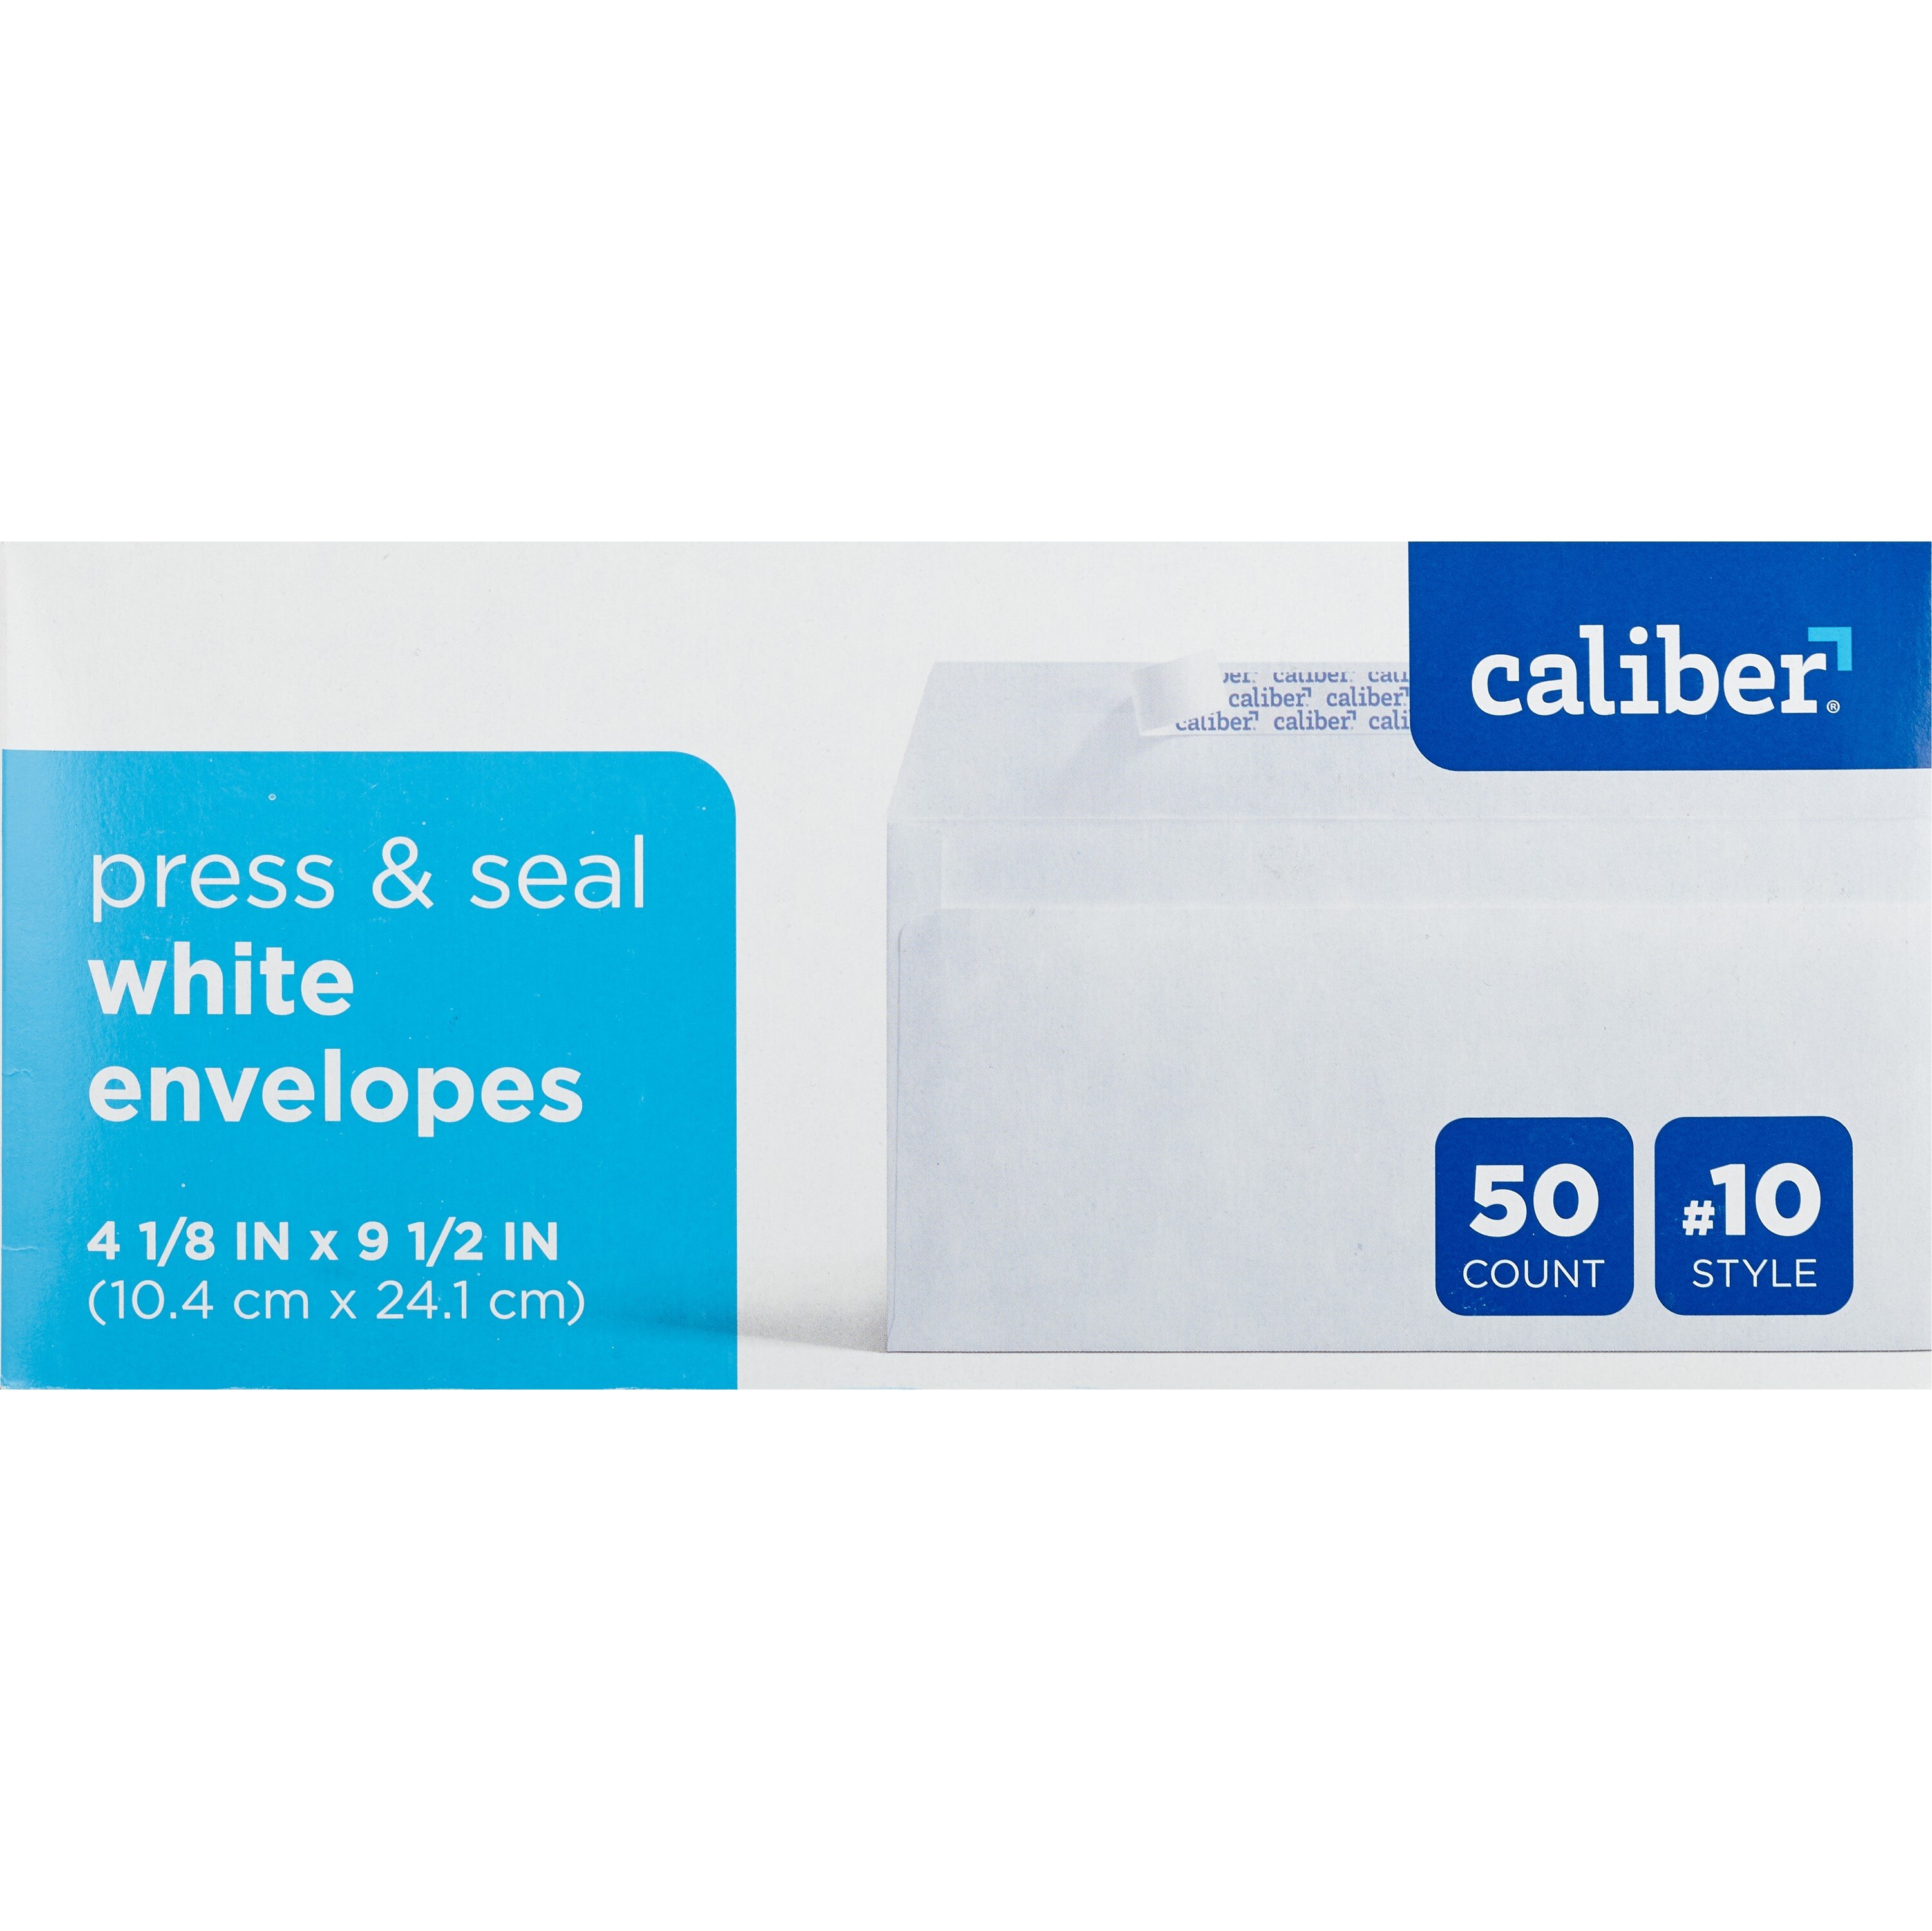 Caliber #10 Press & Seal White Envelopes, 4 1/8 in. x 9 1/2 in., 50 CT